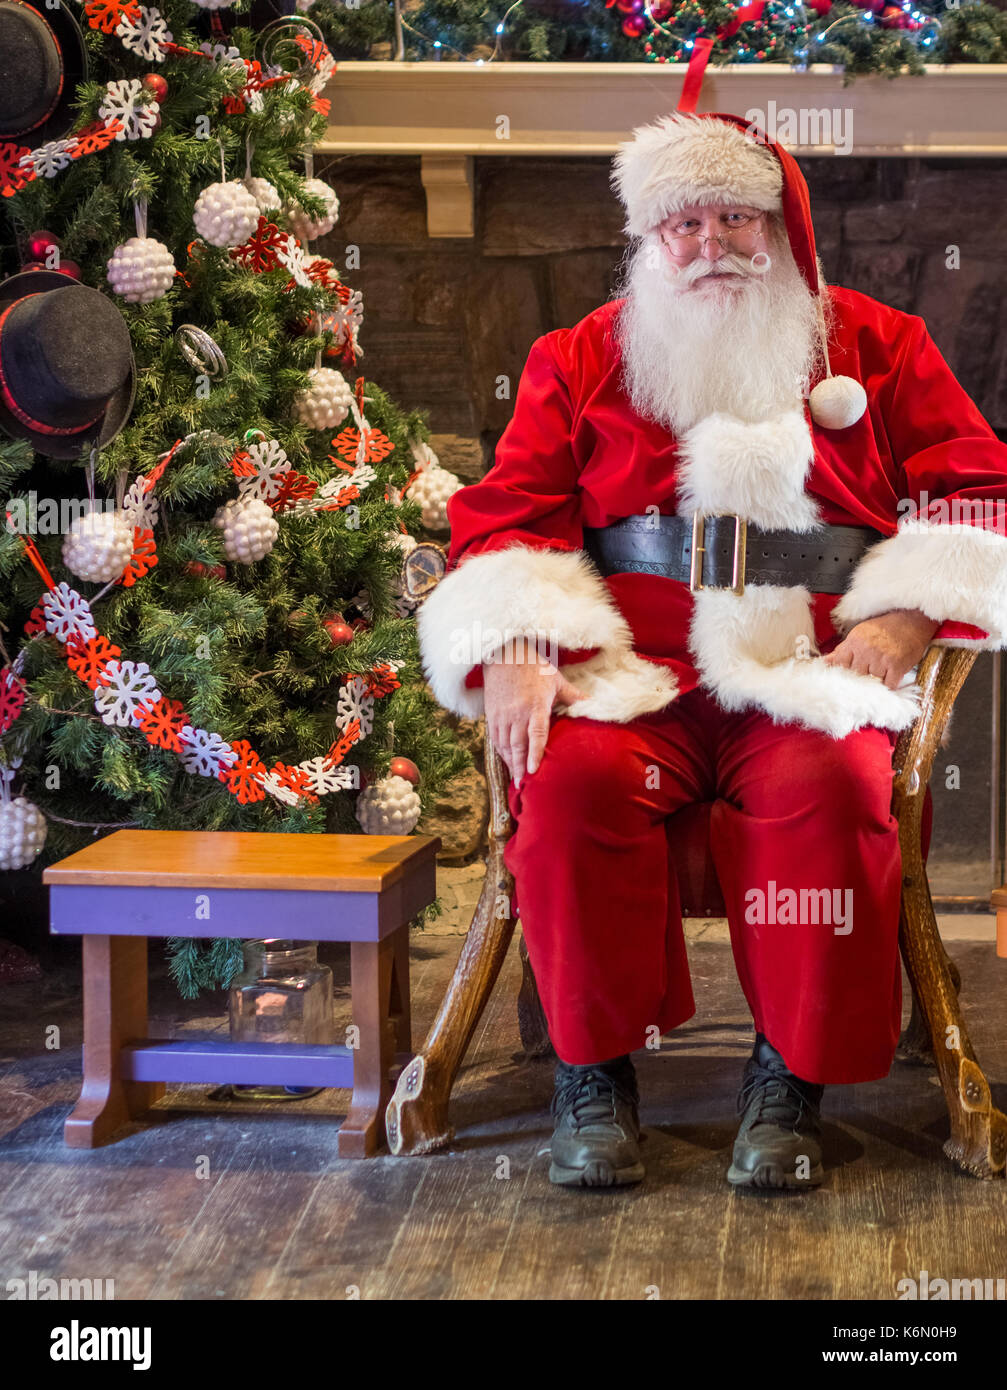 Sant warten auf Kinder zu erhalten, die ihren Urlaub in ein Hallenbad Einstellung geklickt haben. Der Hintergrund zeigt einen geschmückten Weihnachtsbaum mit Ornamenten. Stockfoto